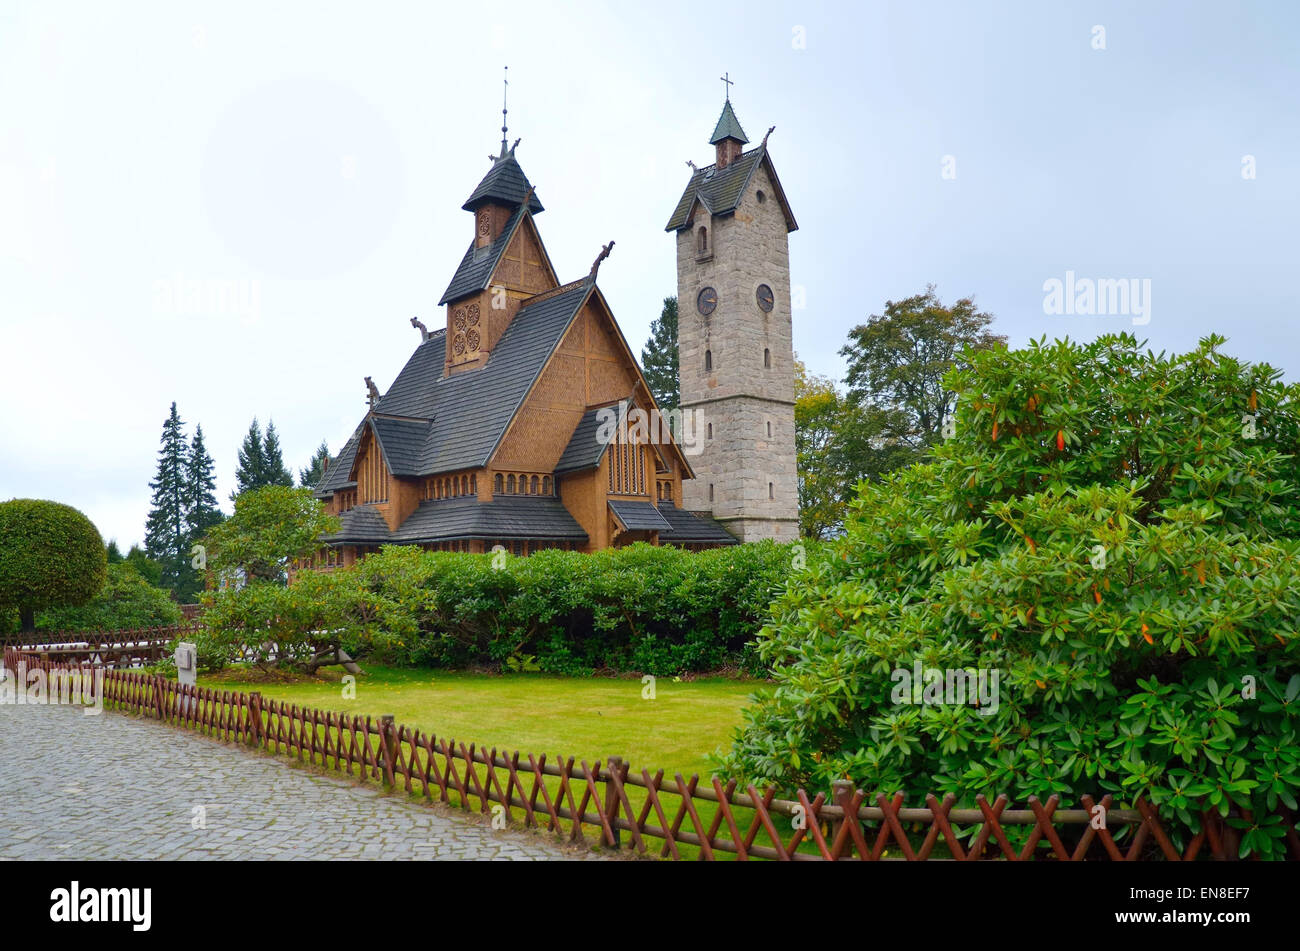 Tempel Wang in Karpacz. Norwegische Stabkirche Kirche die Stadt Karpacz im Riesengebirge, Polen übertragen wurde. Stockfoto